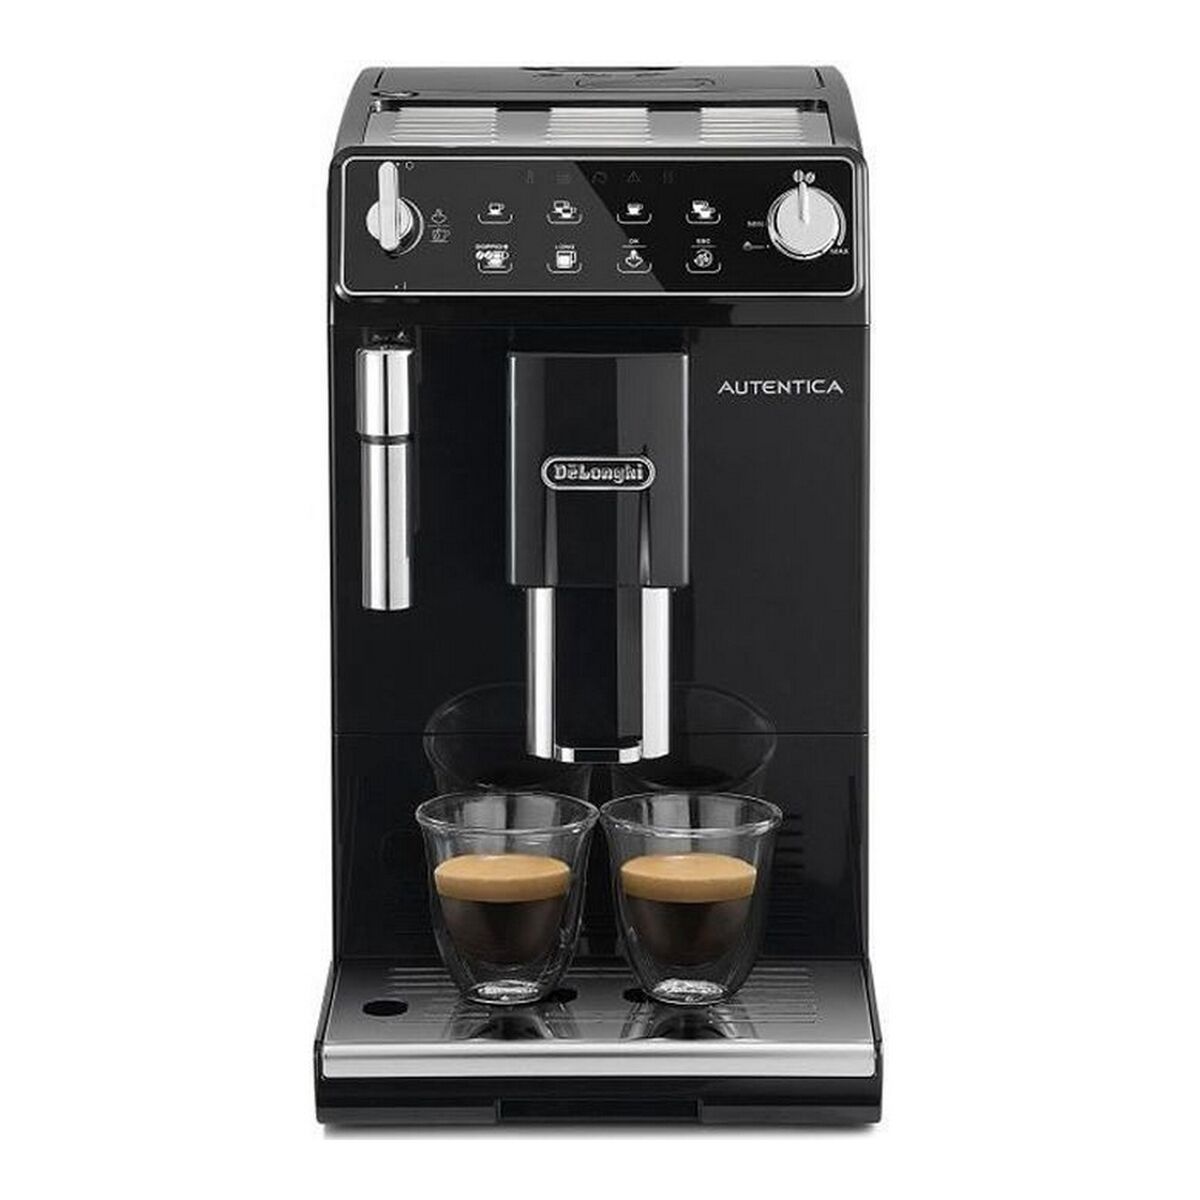 Elektrisk kaffebryggare Delonghi Etam 29510b svart